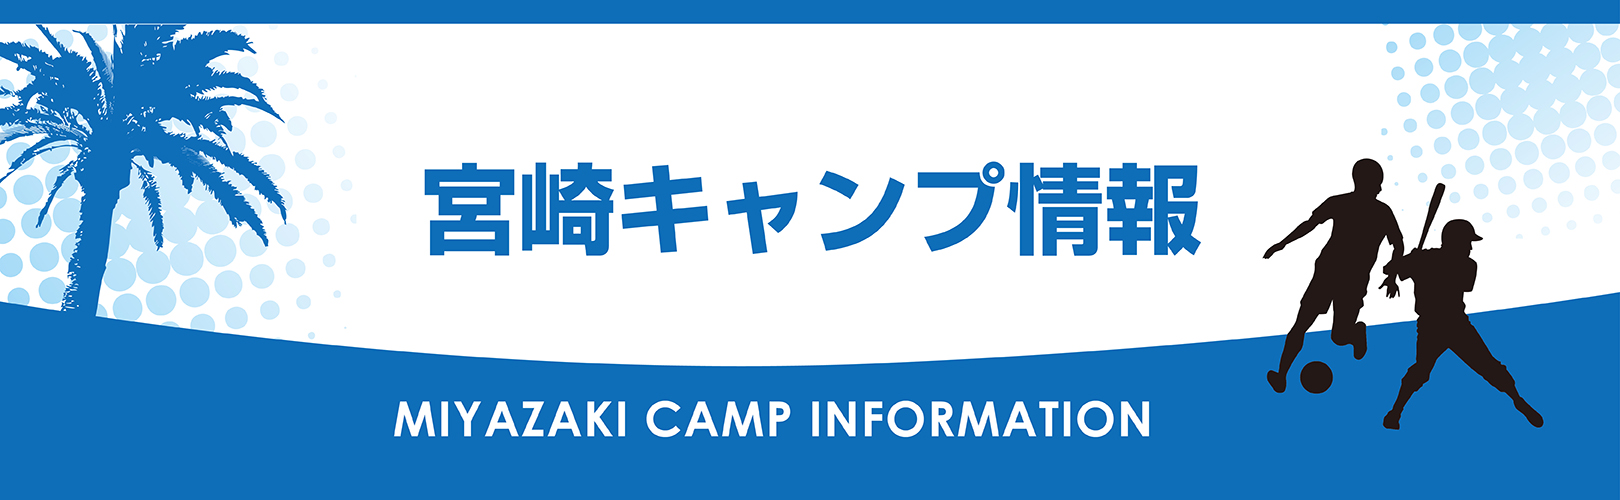 宮崎春季キャンプ情報 19 宮崎にキャンプシーズン到来 お知らせ 公式 フェニックス シーガイア リゾート